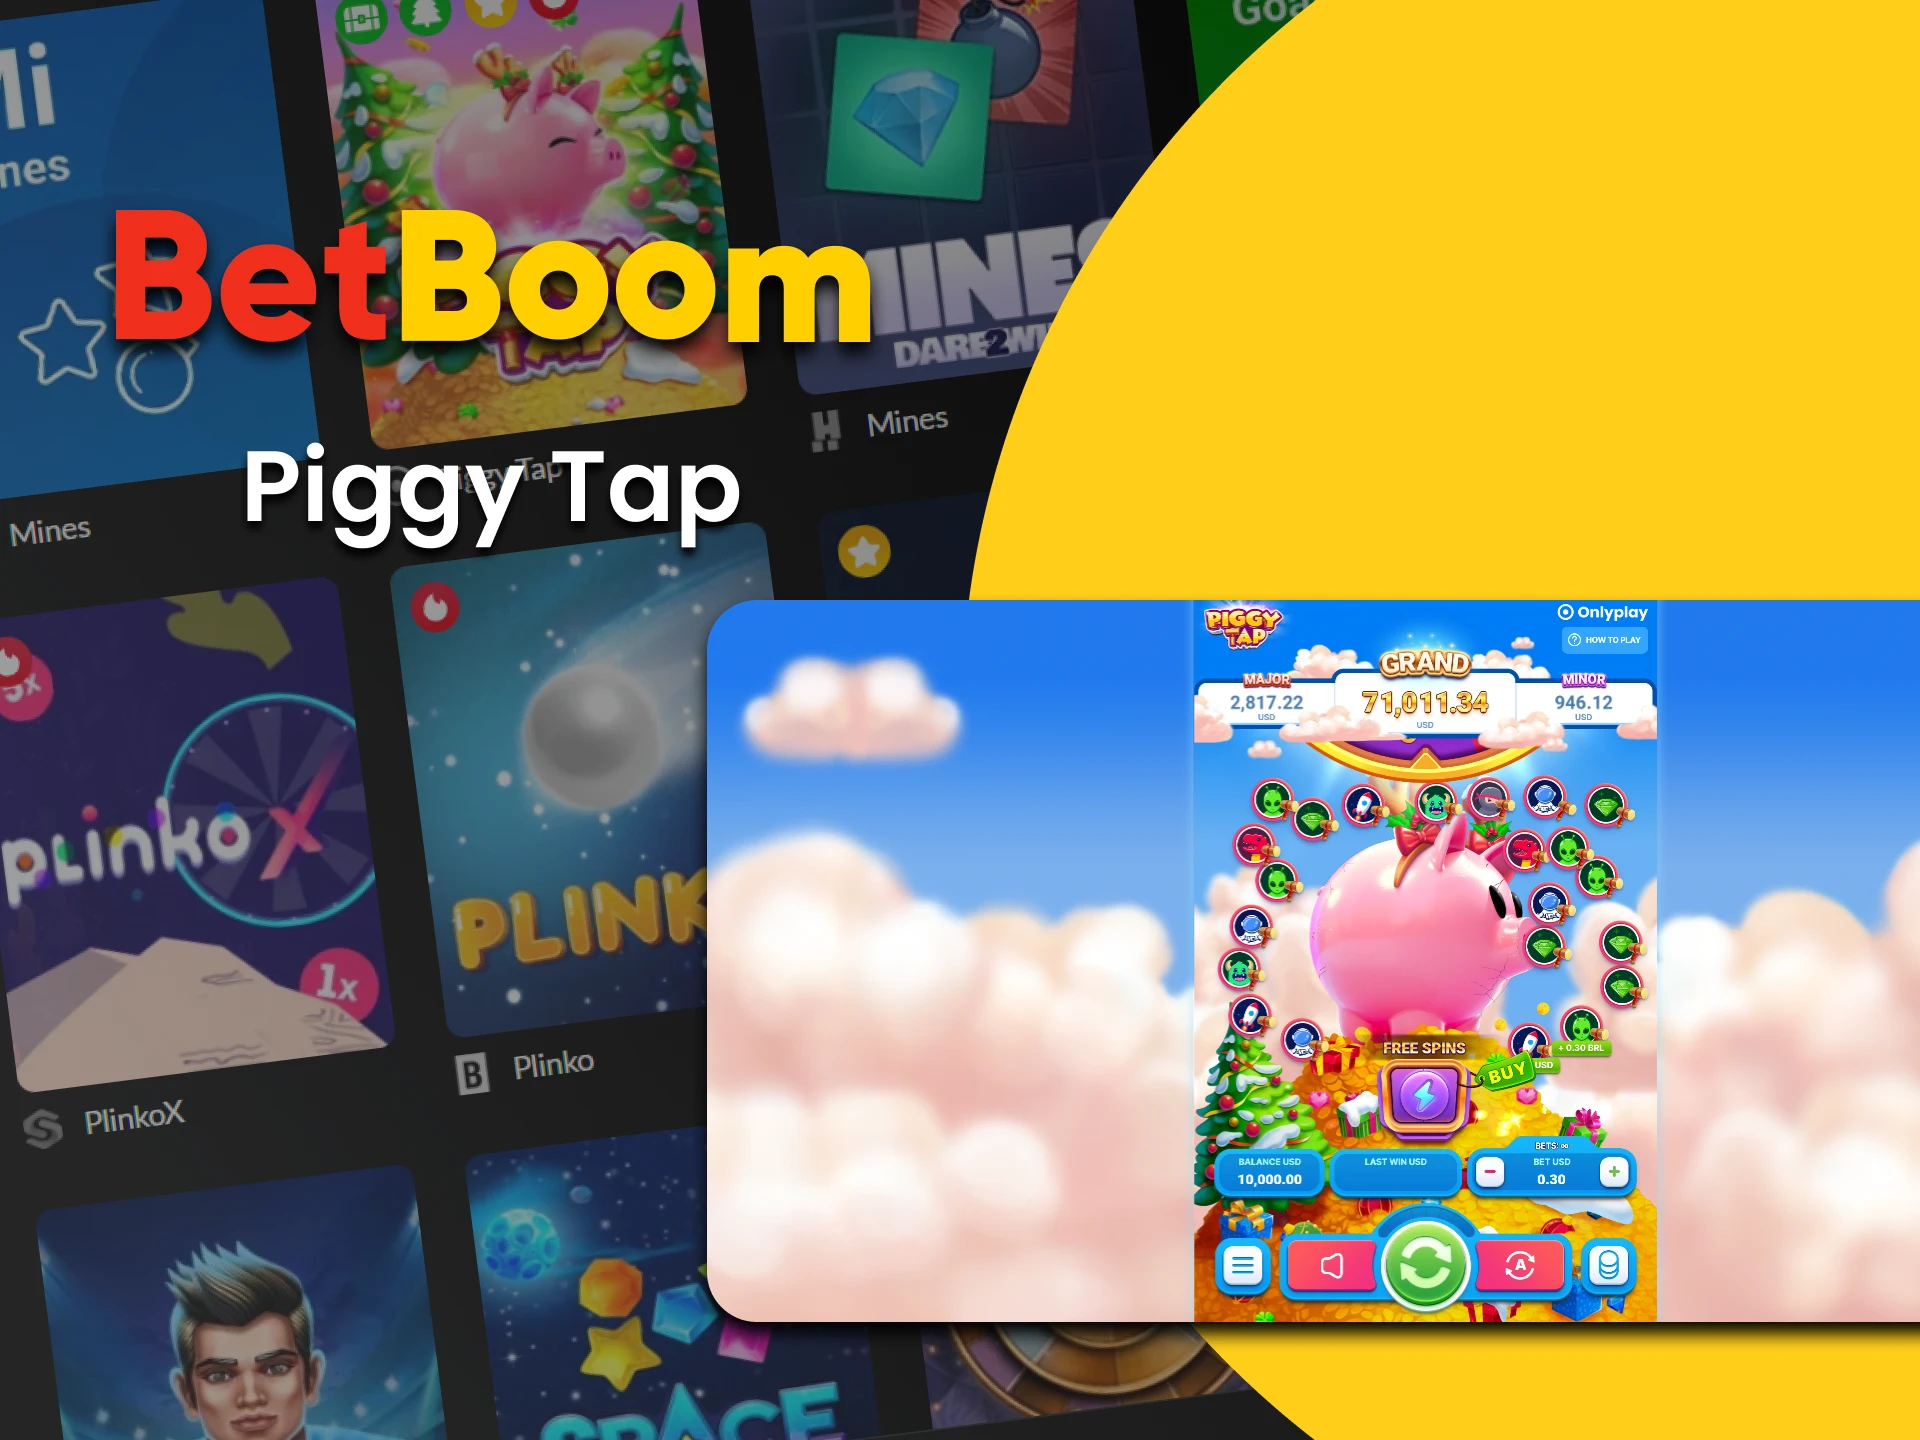 Para jogar Piggy Tap, escolha a seção de jogos rápidos no BetBoom.